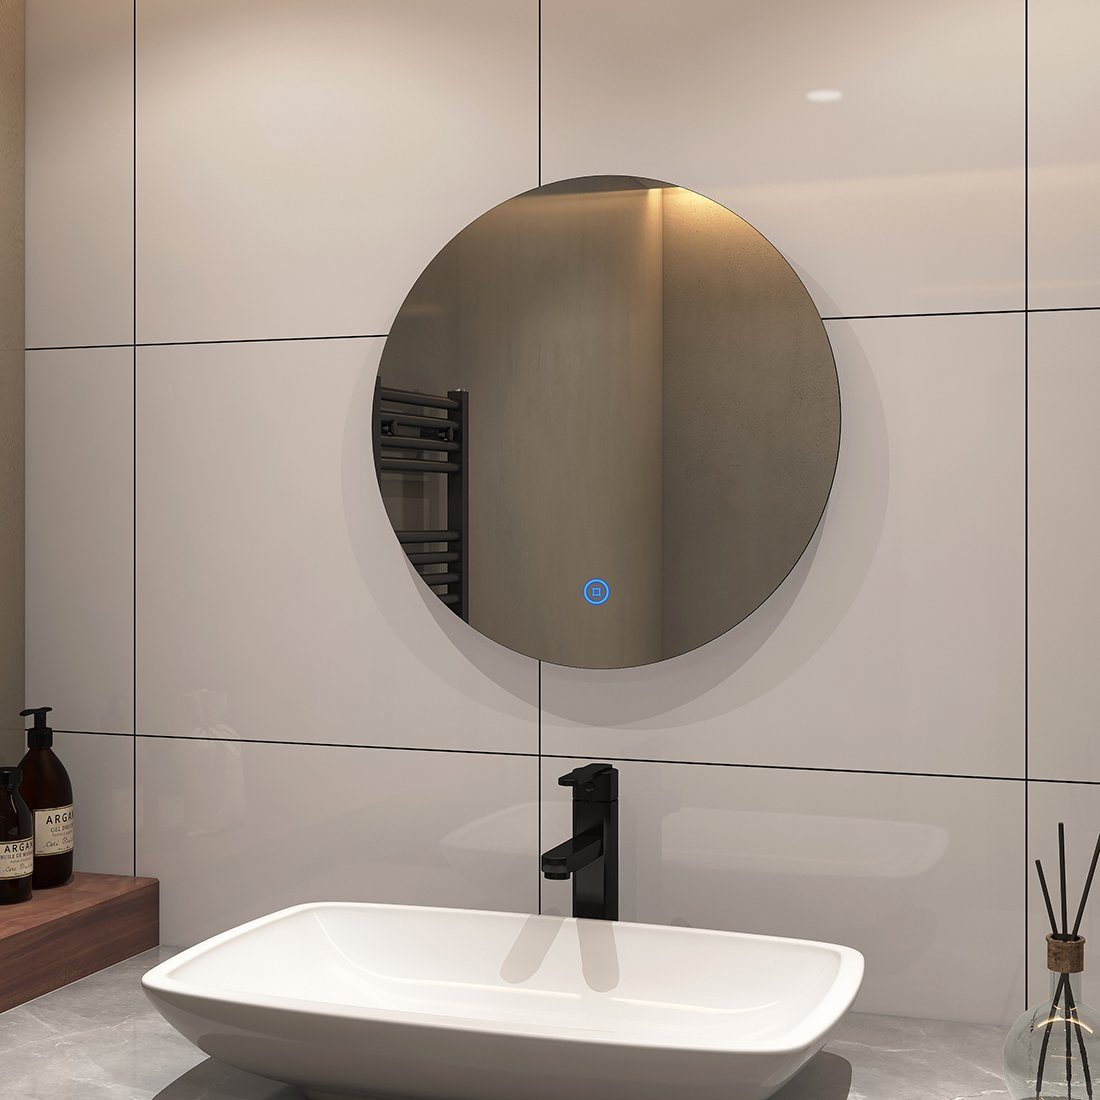 S'AFIELINA Badspiegel LED Badspiegel Wandspiegel Rund Schalter,Kaltweiß Badezimmerspiegel, Helligkeit,IP44 mit Touch 6500K,Einstellbare Beleuchtung